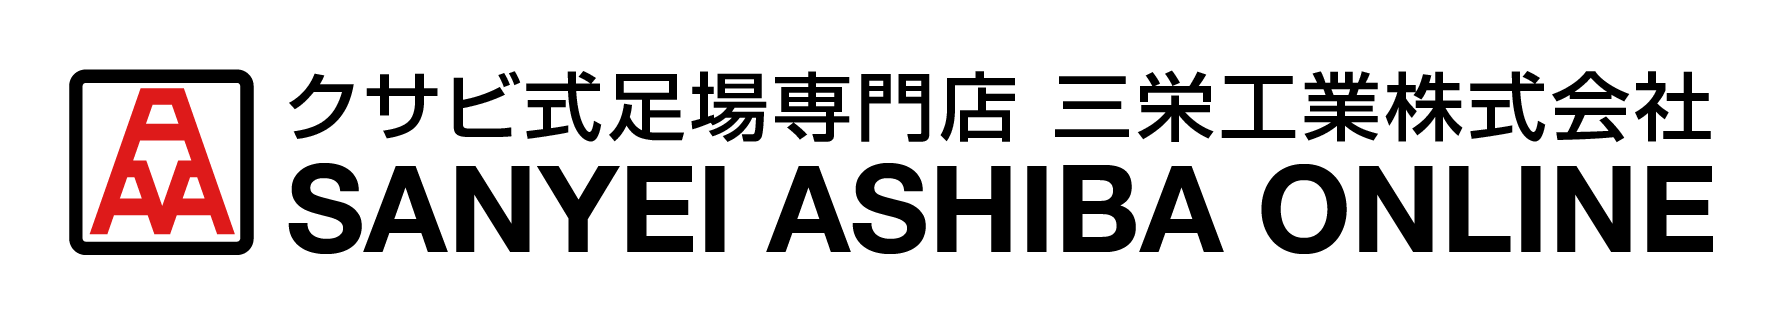 三栄足場販売オンラインのロゴ